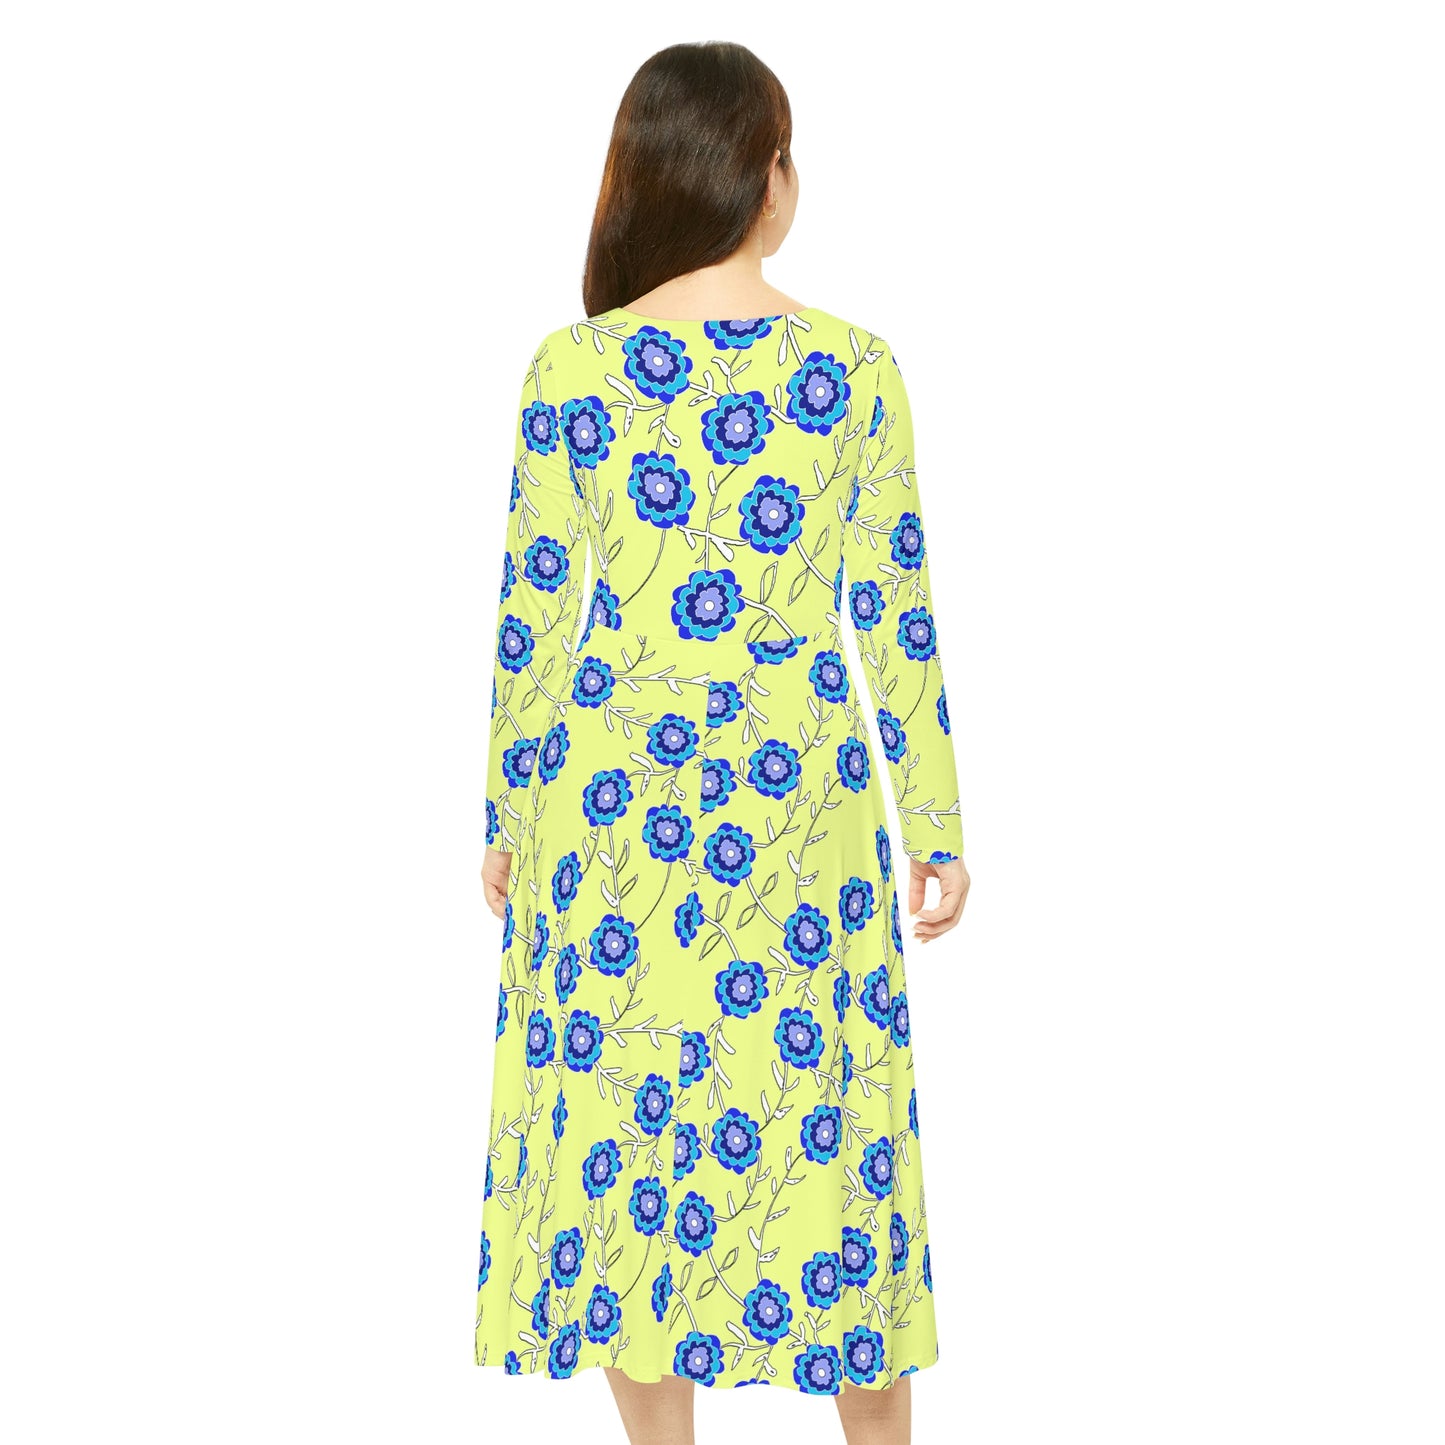 Blue Flowers on Yellow Women's Long Sleeve Dance Dress (AOP)